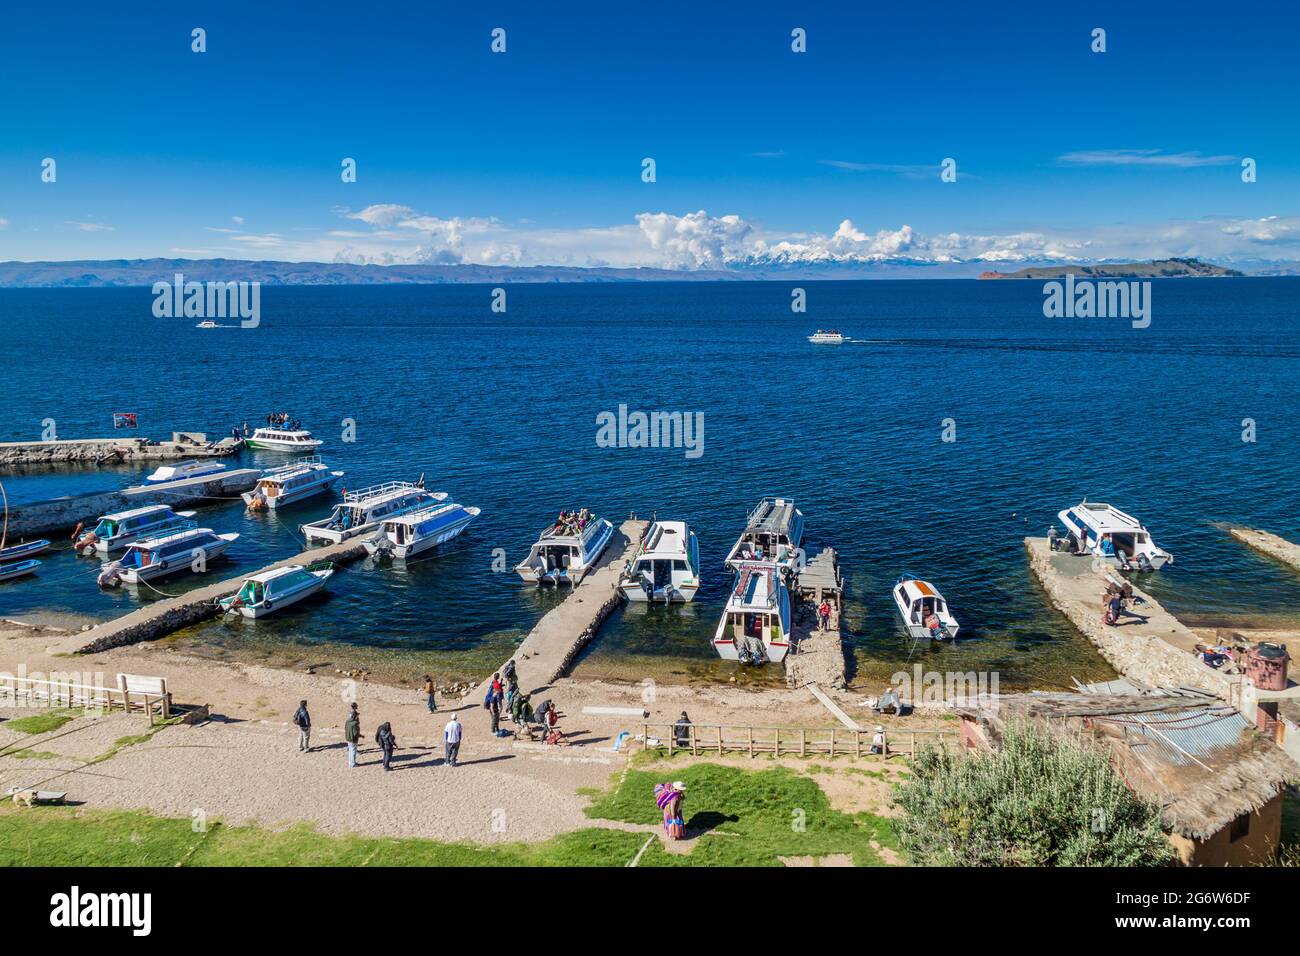 ISLA DEL sol, BOLIVIE - 12 MAI 2015: Bateaux de touristes ancrés dans le village de Yumani sur Isla del sol (île du Soleil) dans le lac Titicaca, Bolivie Banque D'Images